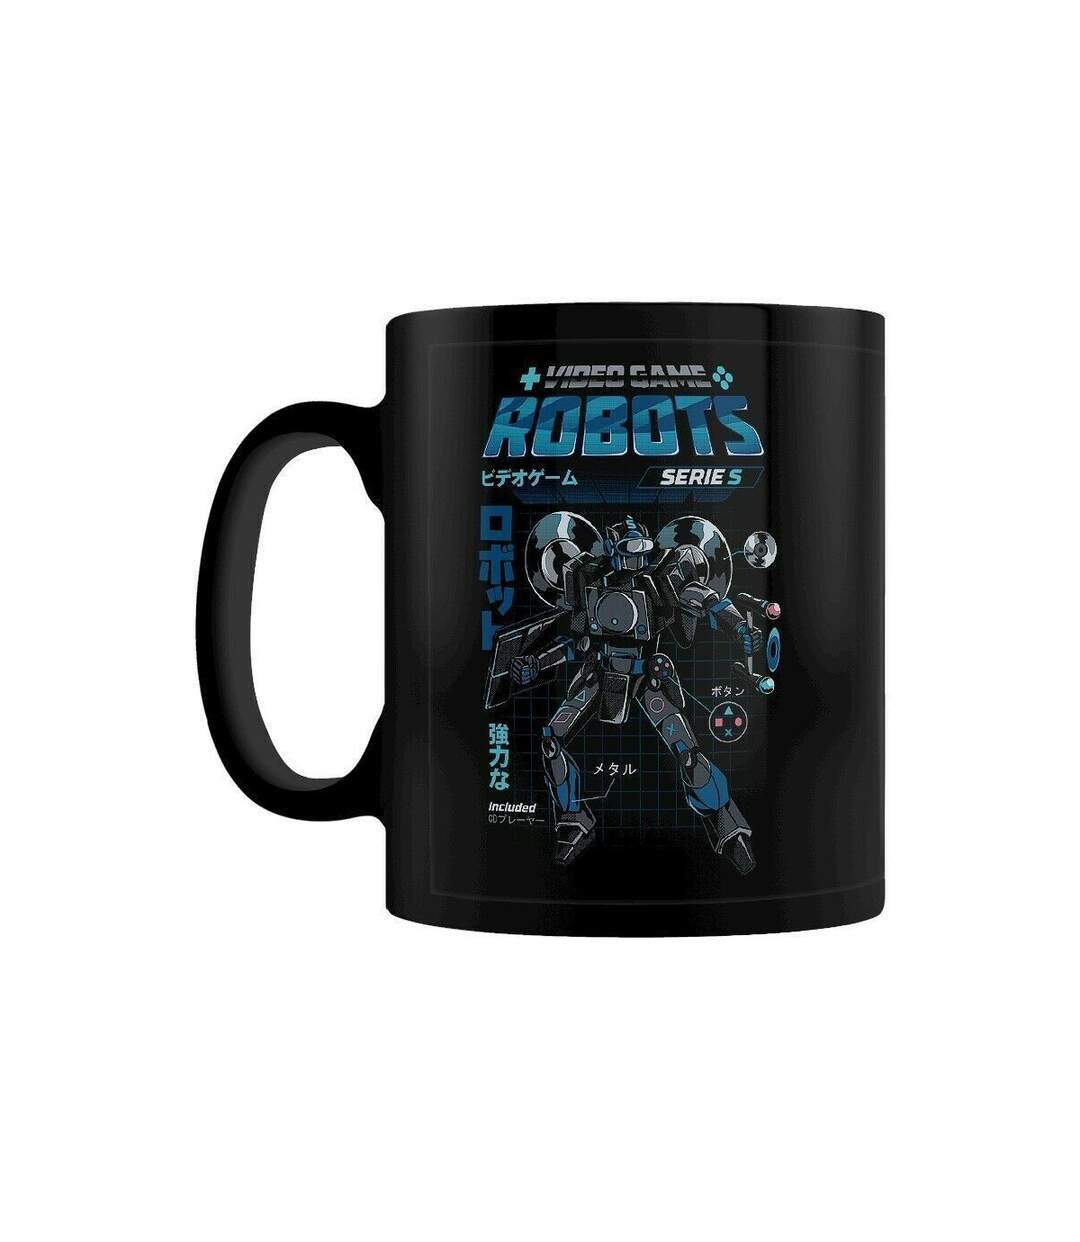 Ilustrata Robots de jeux vidéo Série S Mug (BLACK/BLUE) (Taille unique) - UTPM2934